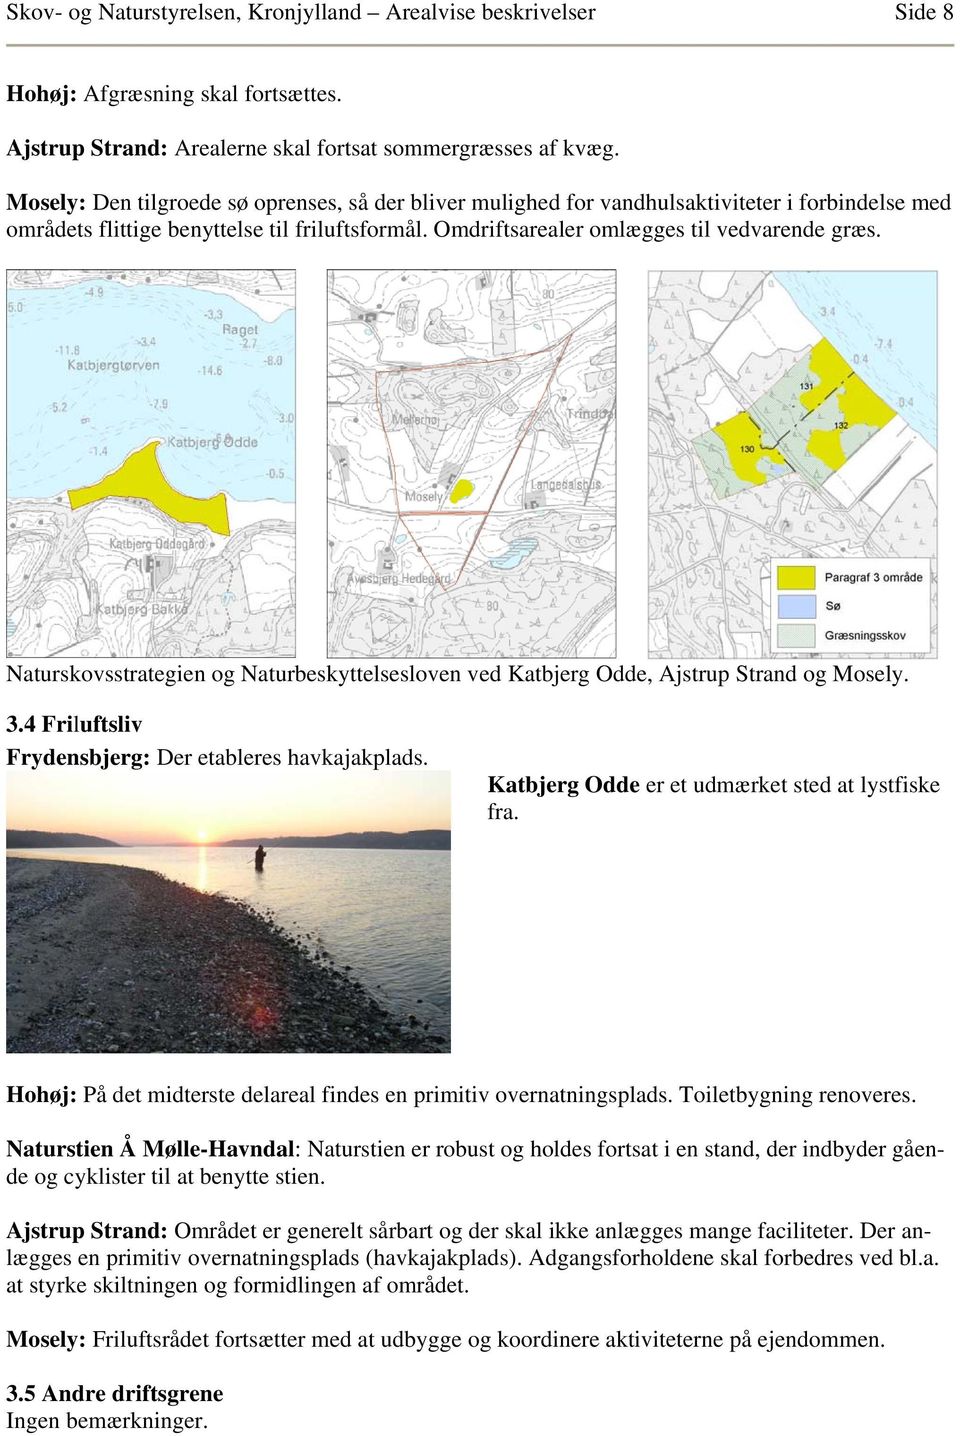 Naturskovsstrategien og Naturbeskyttelsesloven ved Katbjerg Odde, Ajstrup Strand og Mosely. 3.4 Friluftsliv Frydensbjerg: Der etableres havkajakplads.